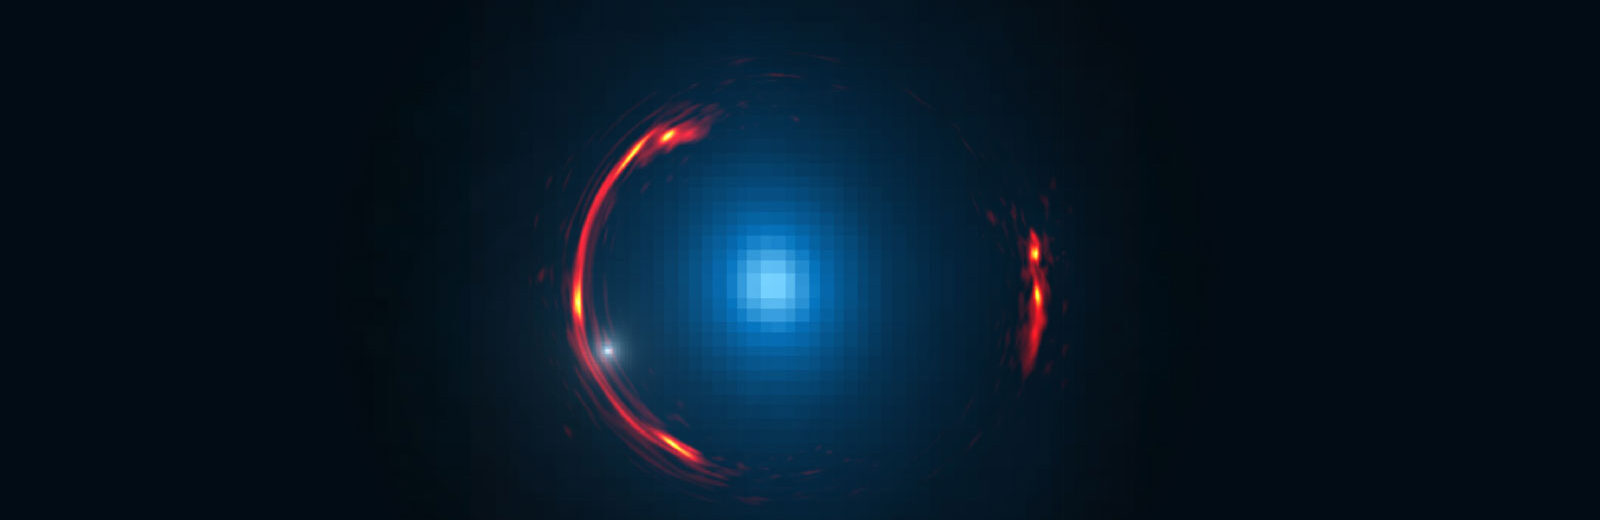 ALMA Founds Dark Dwarf Galaxy 